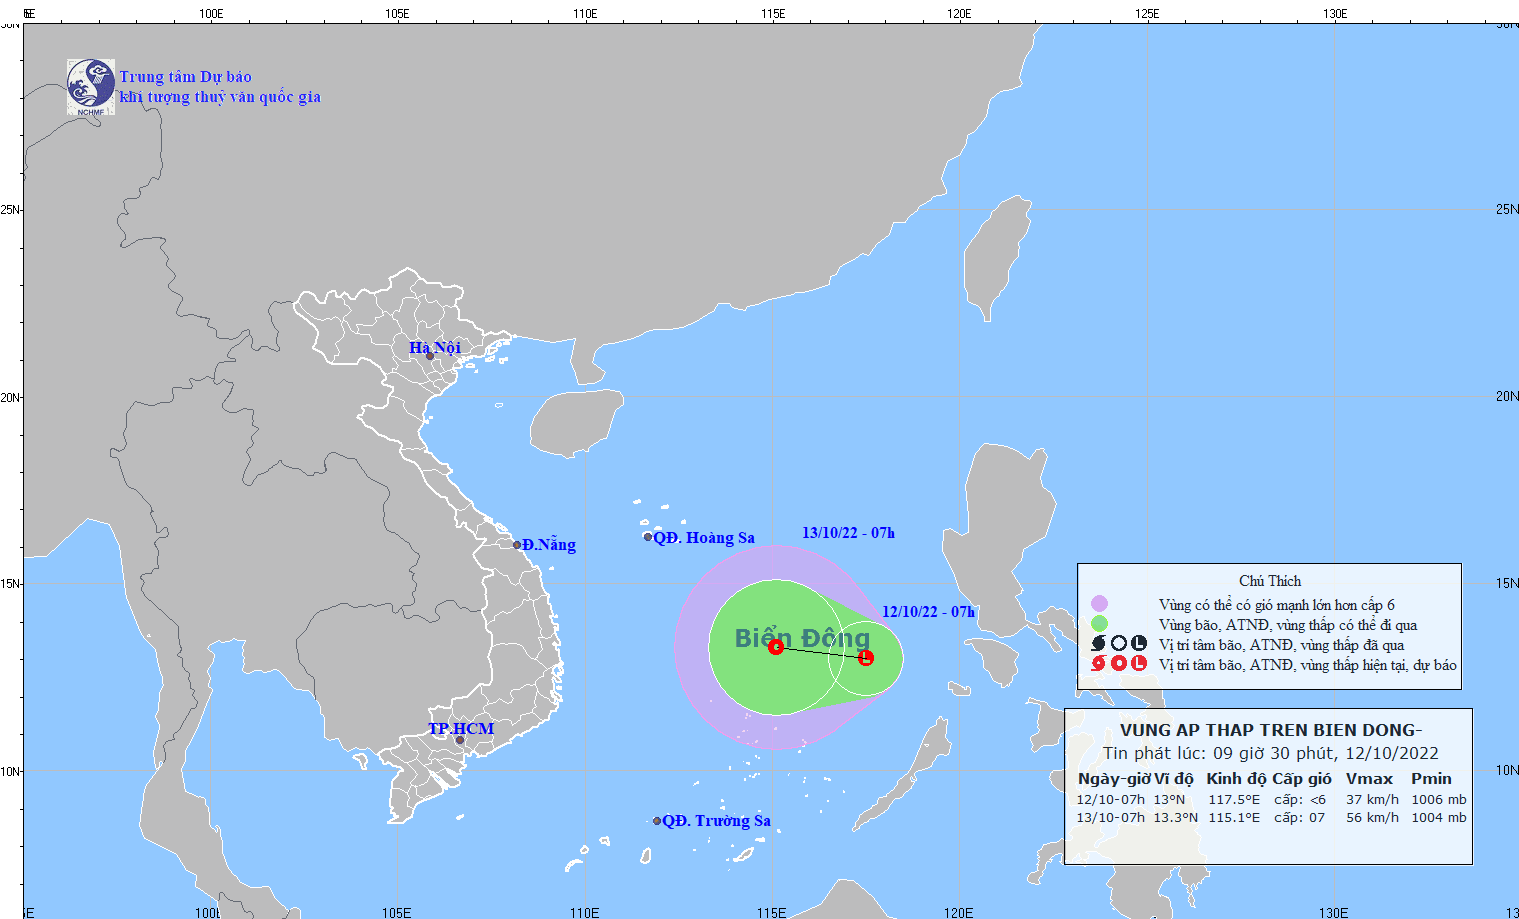 Vùng áp thấp đang hình thành ở Biển Đông, miền Trung đón mưa lớn